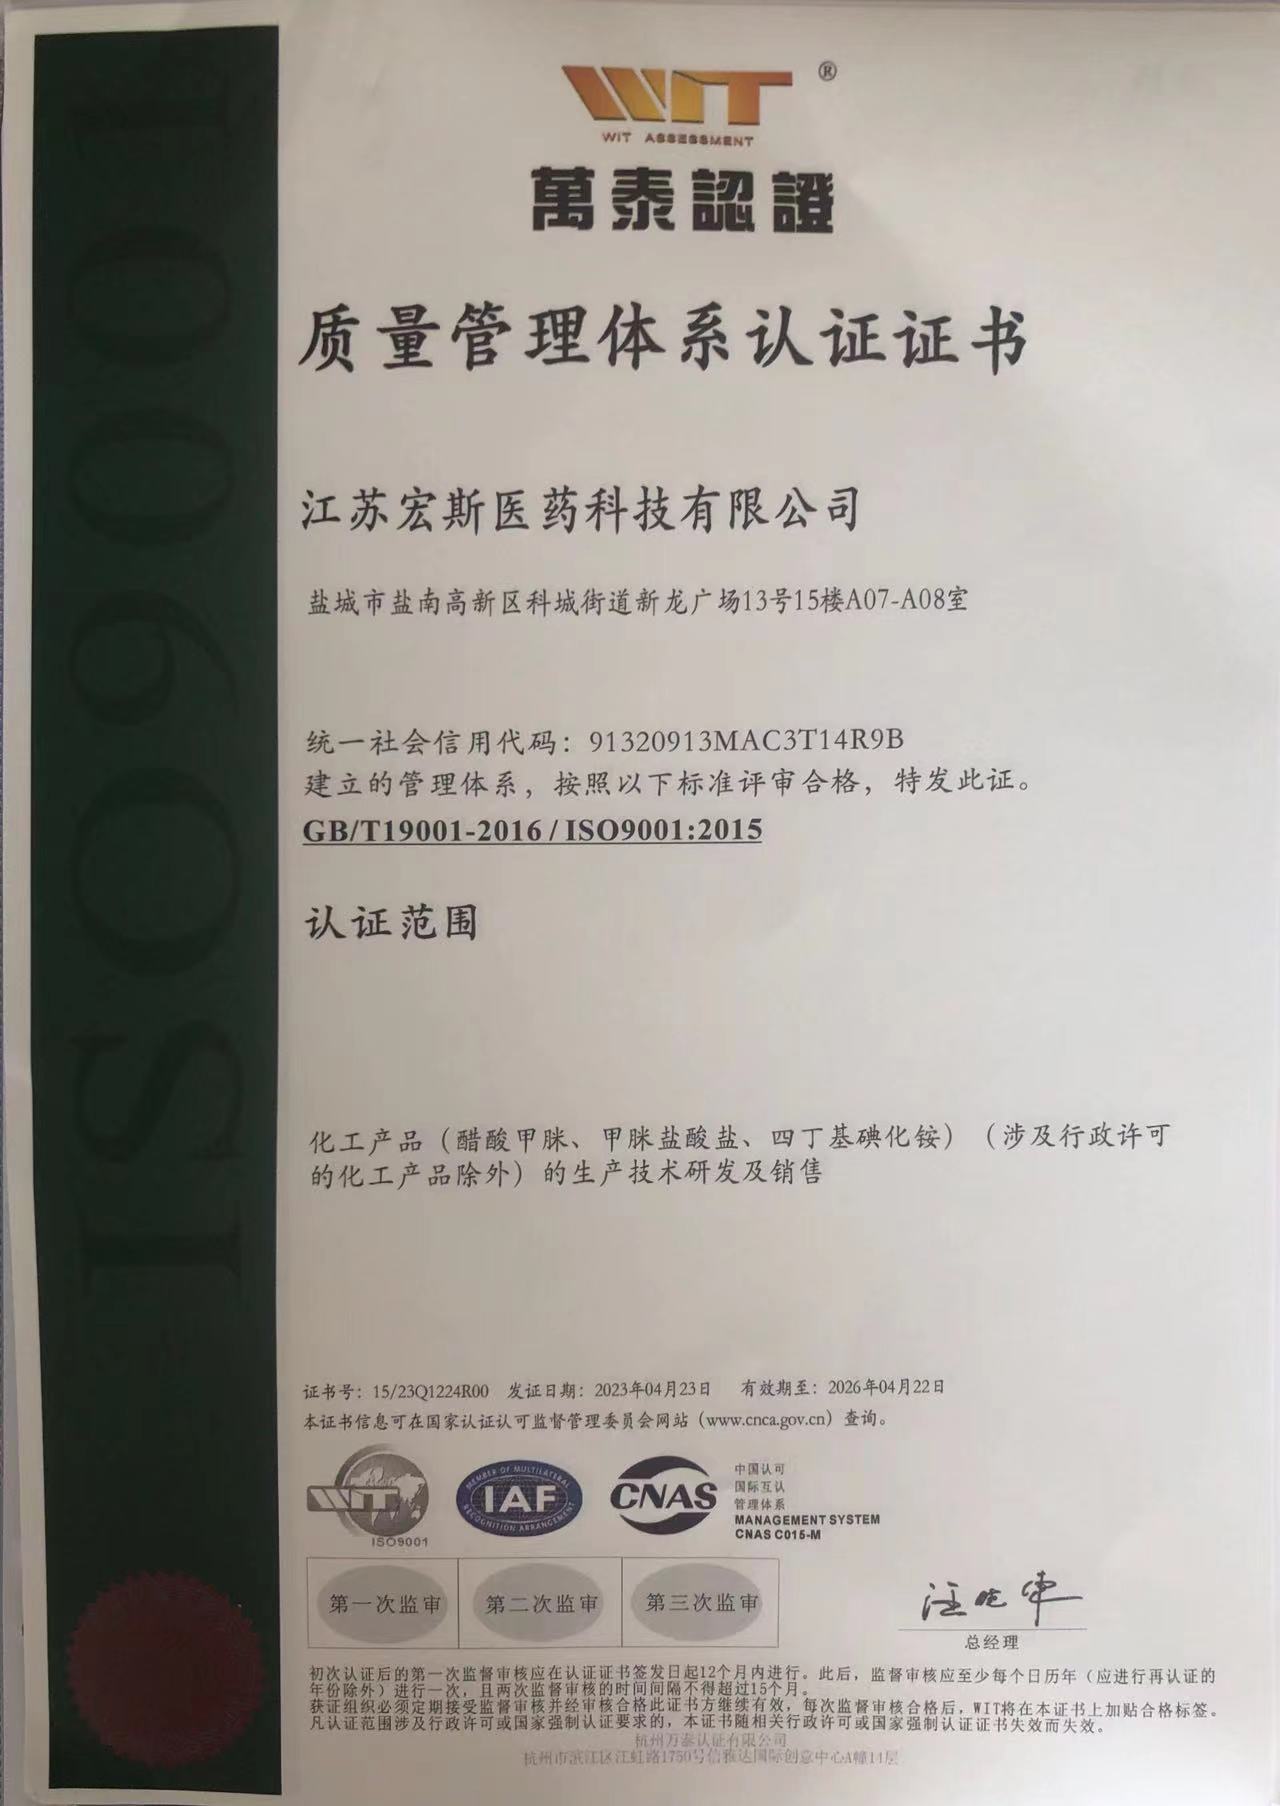 जियांग्सू होंगसी मेडिकल टेक्नोलॉजी कंपनी लिमिटेड का गर्मजोशी से जश्न मनाएं, जिसने आईएसओ9001:2015 अंतरराष्ट्रीय गुणवत्ता प्रणाली प्रमाणन सफलतापूर्वक पारित कर दिया है।